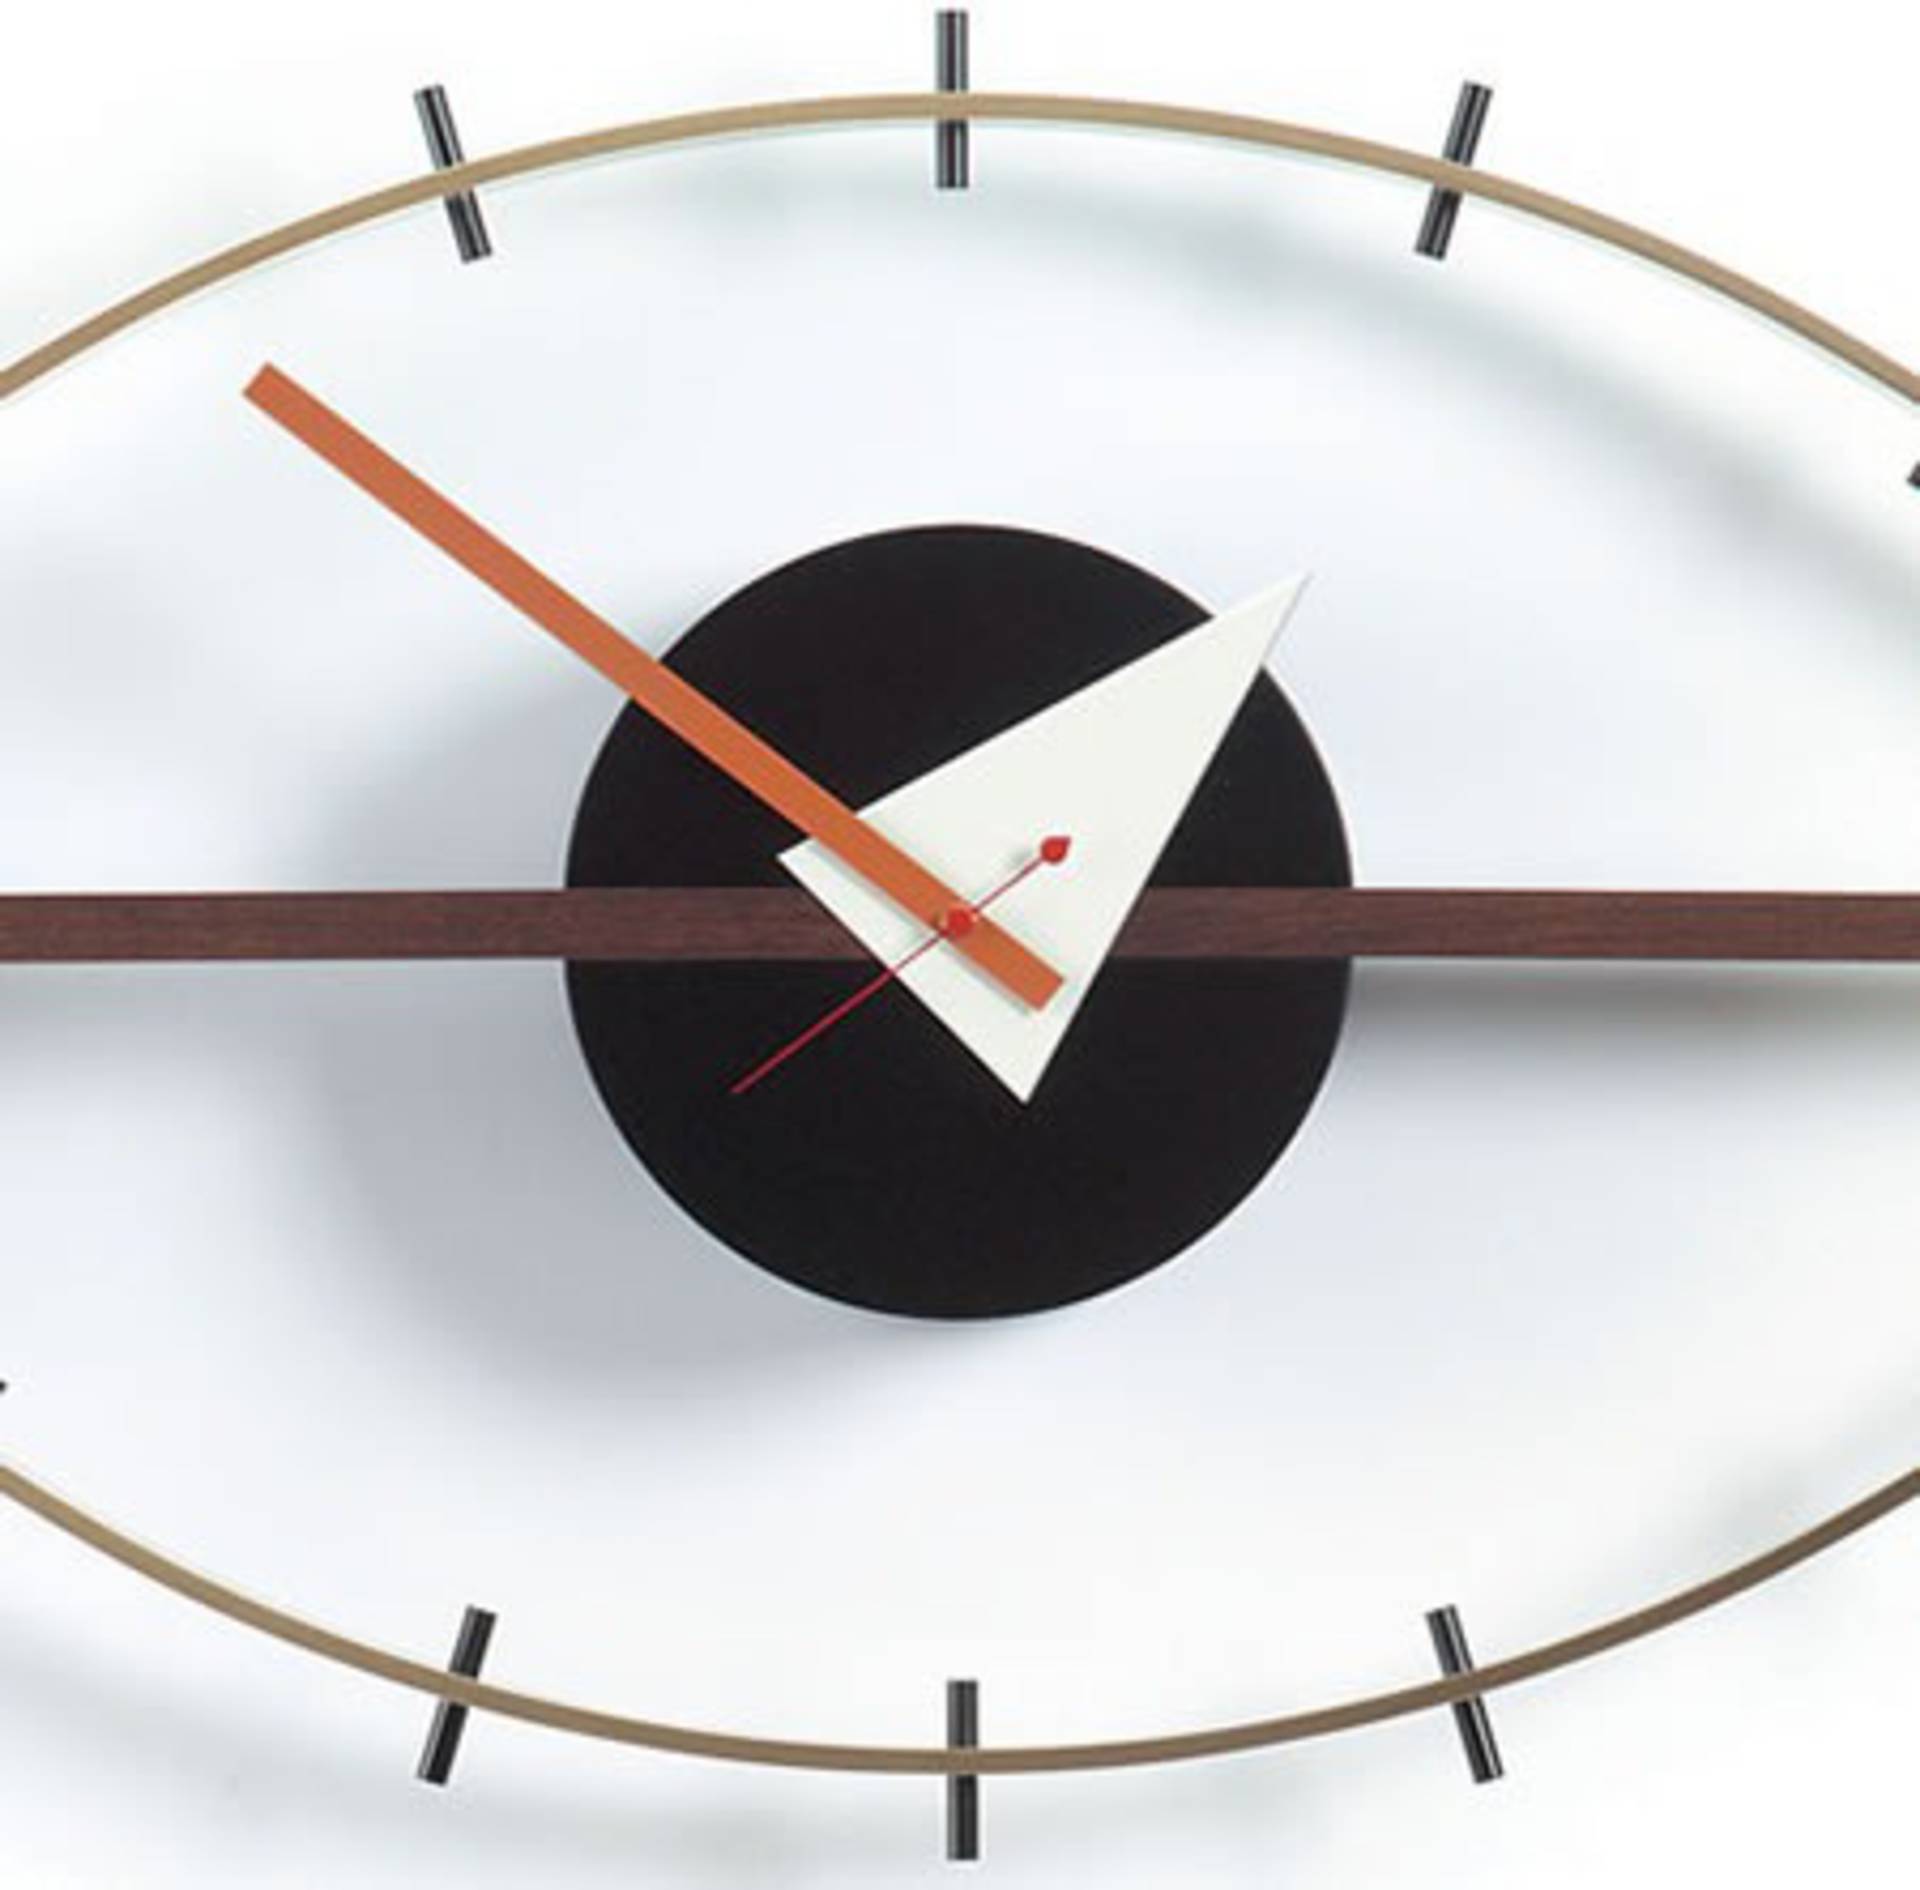 Часы глазки. George Nelson часы Vitra. Часы глаза. Офтальмологические часы. Часы из глаз.